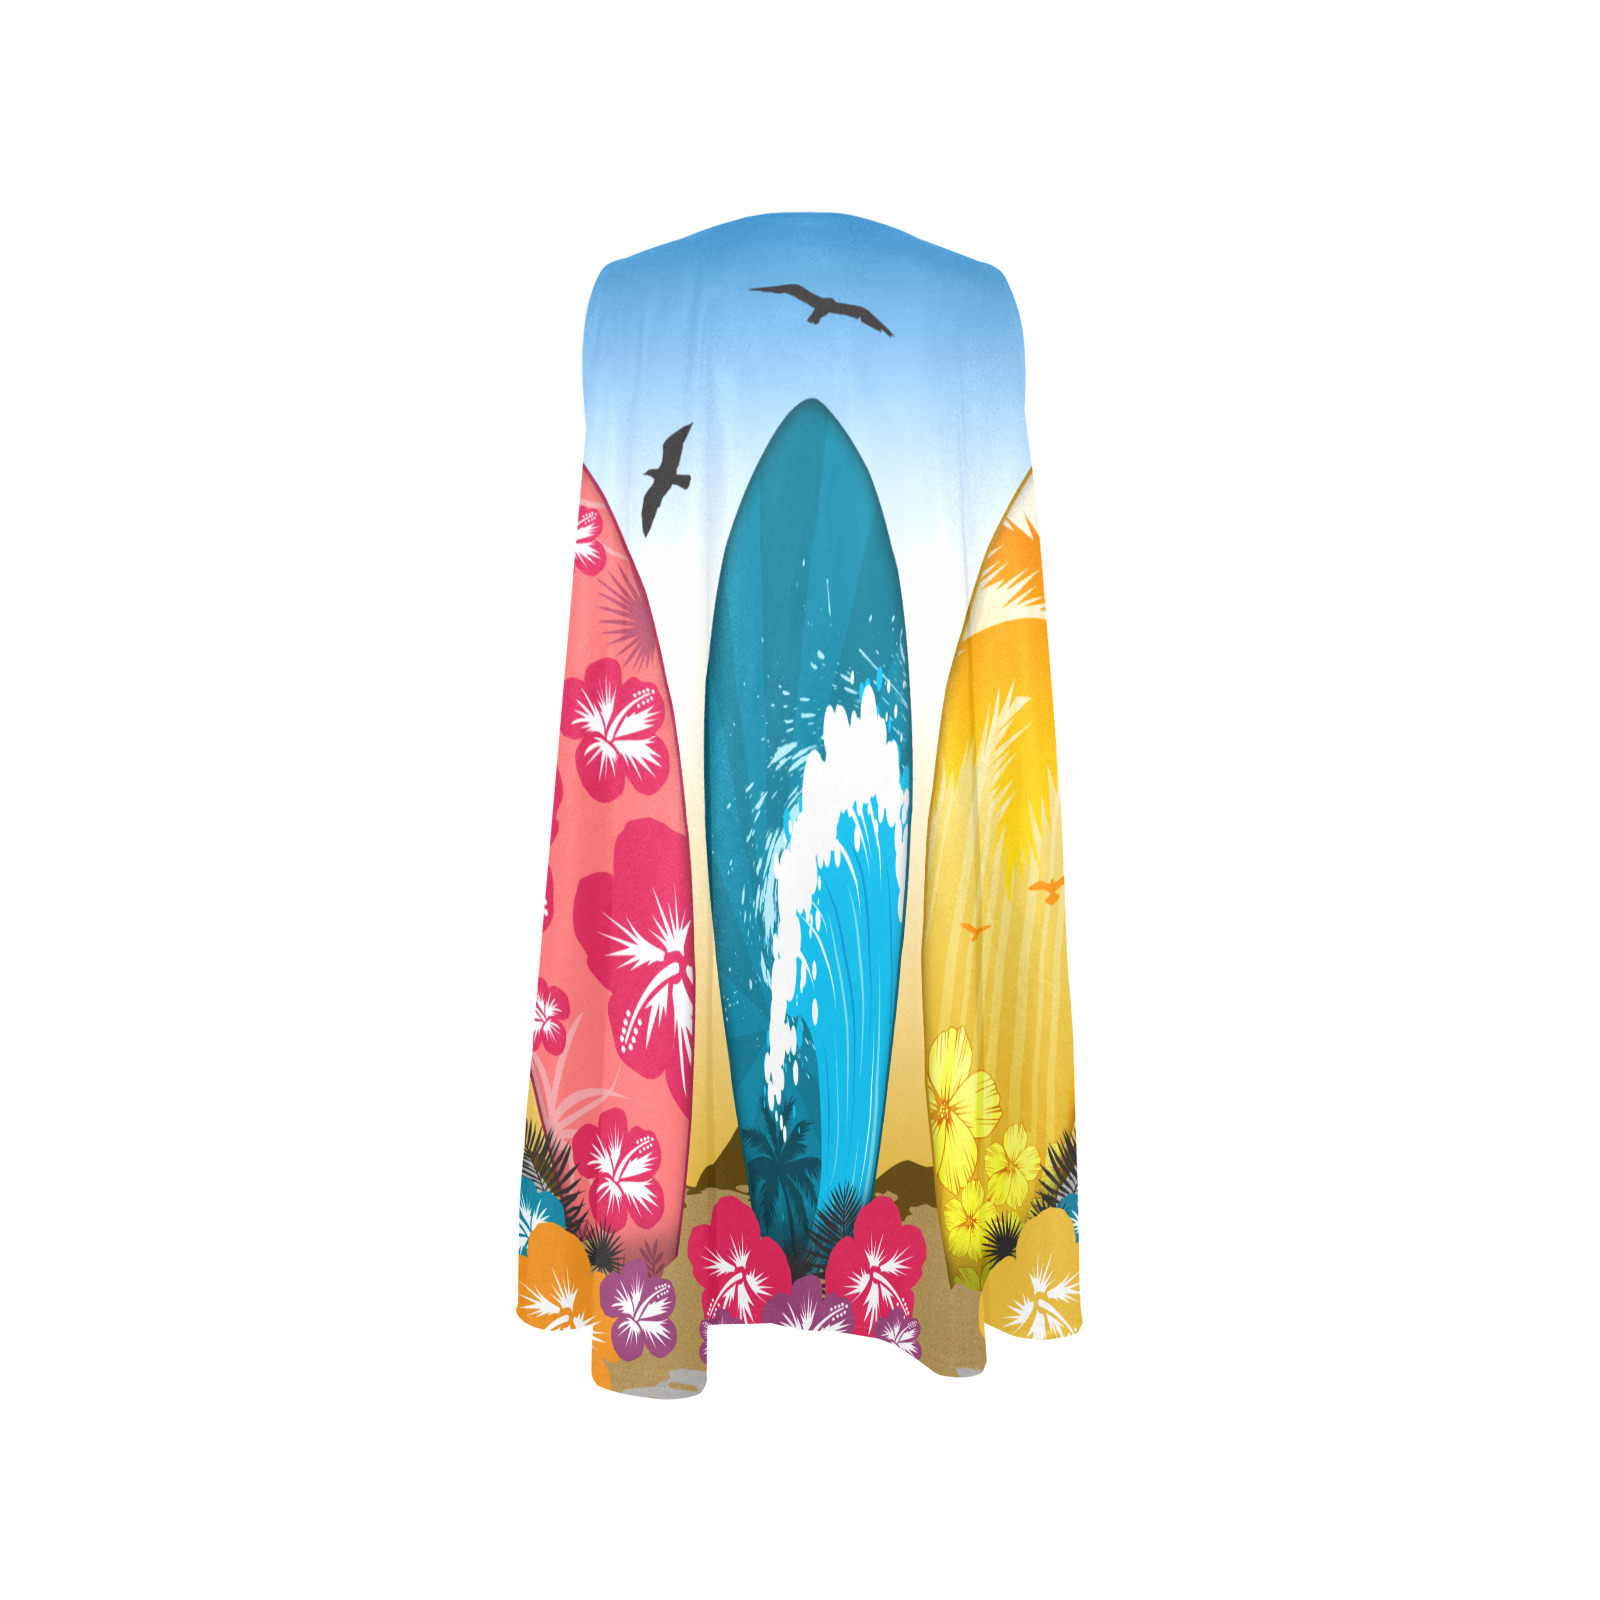 Surfboard Beach Sleeveless A-Line Pocket Dress (Model D57)